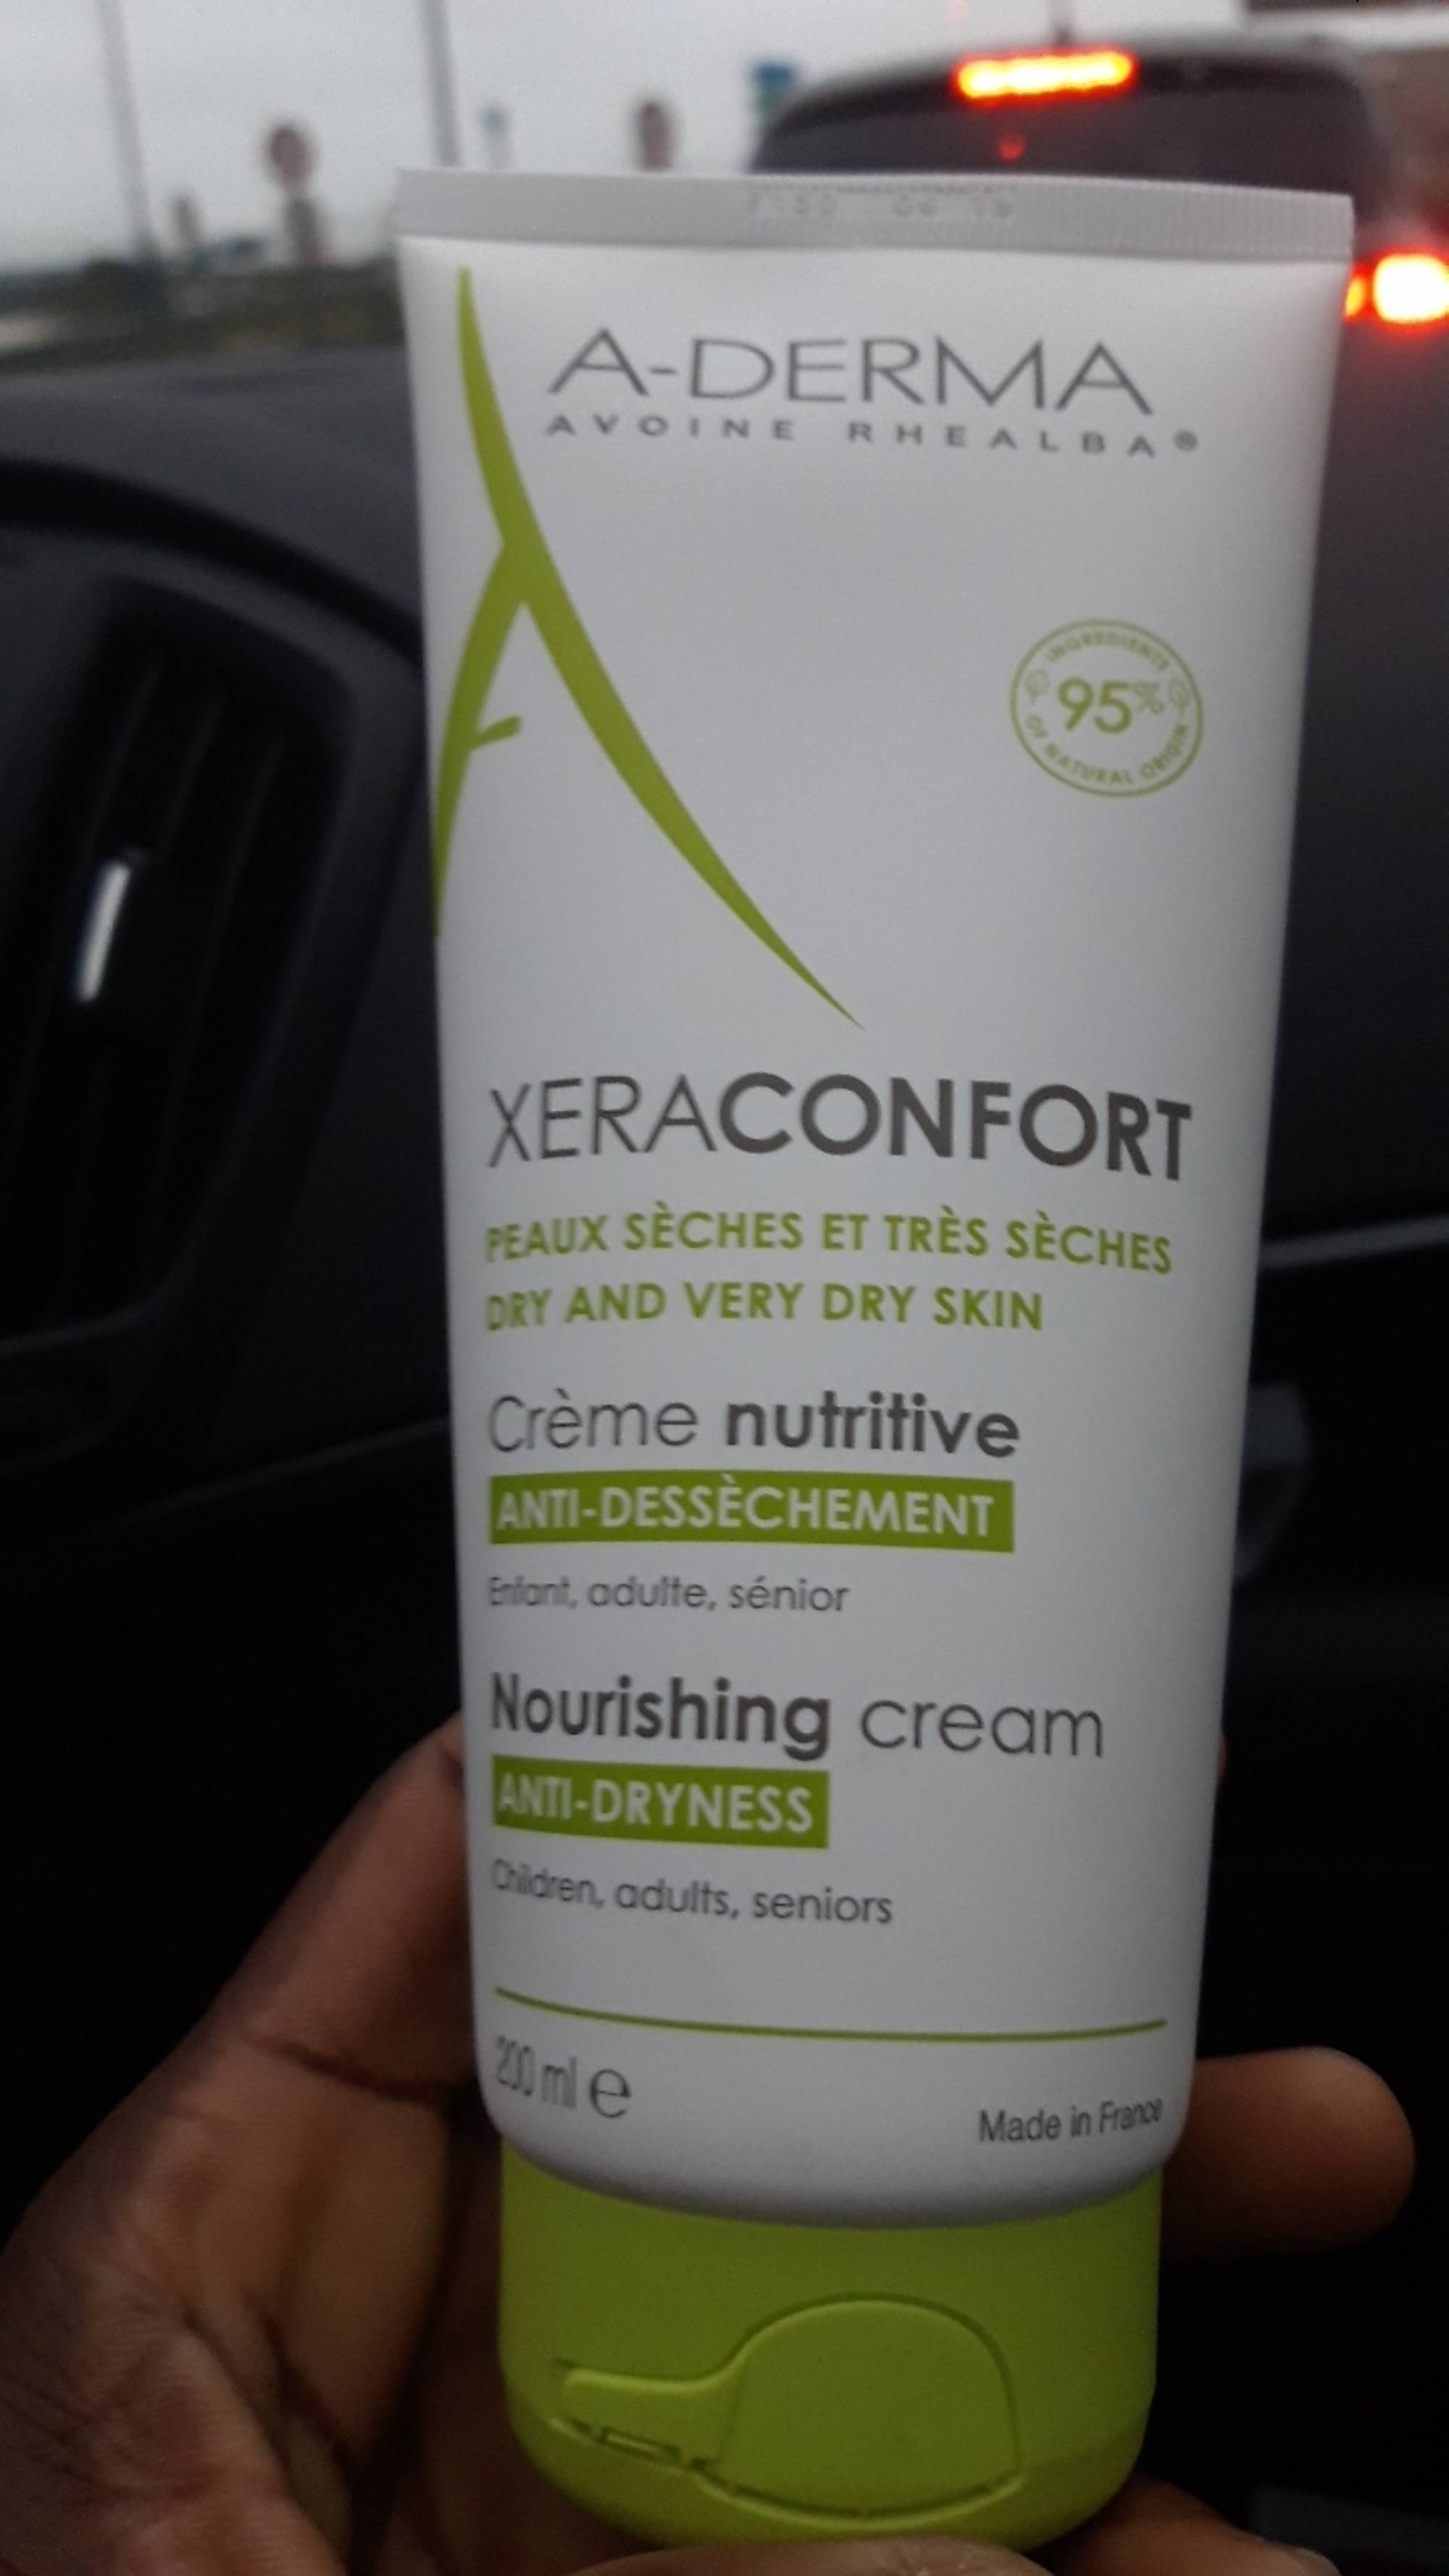 A-DERMA - XeraConfort - Crème nutritive anti-dessèchement